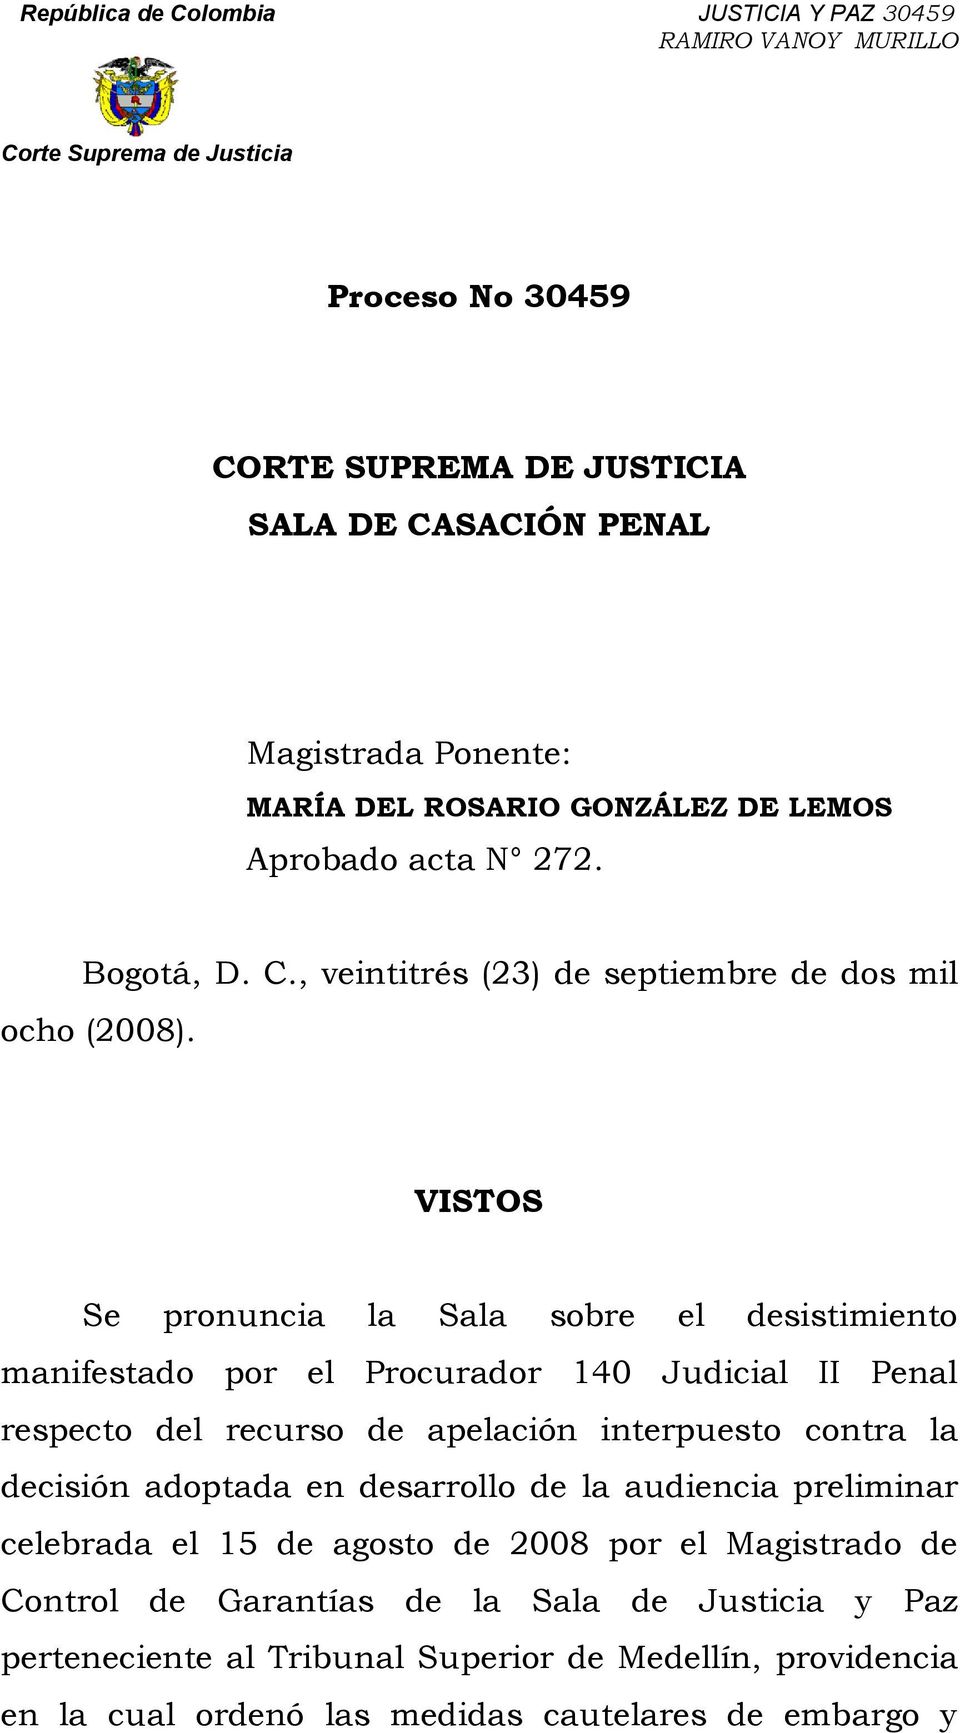 decisión adoptada en desarrollo de la audiencia preliminar celebrada el 15 de agosto de 2008 por el Magistrado de Control de Garantías de la Sala de Justicia y